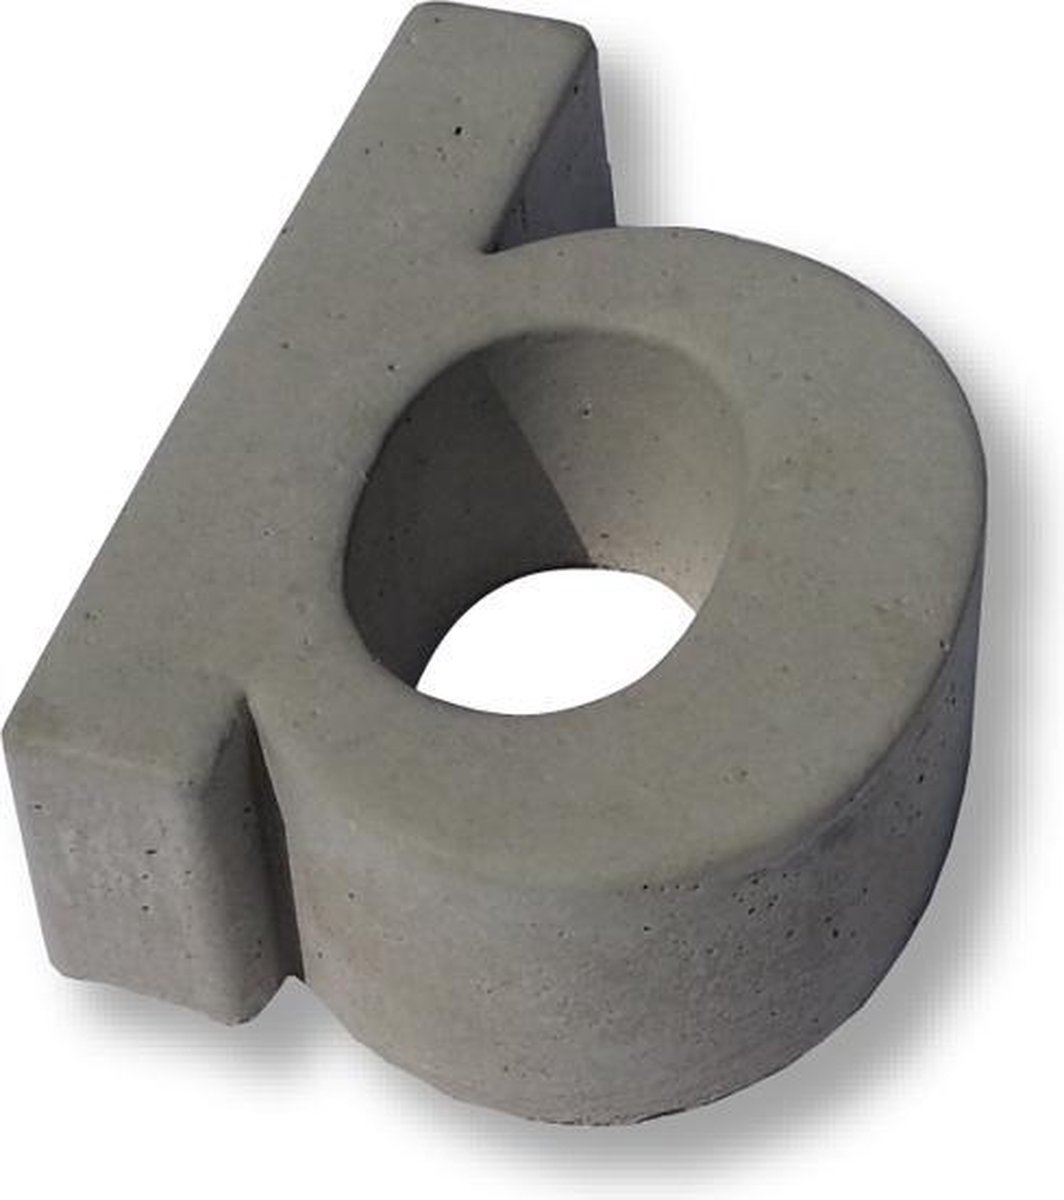 Huisnummer Beton, letter b, Hoogte 10 cm | Huisnummer beton | Huisnummers | Huisnummer modern | Betonnen huisnummer | Gratis verzending!